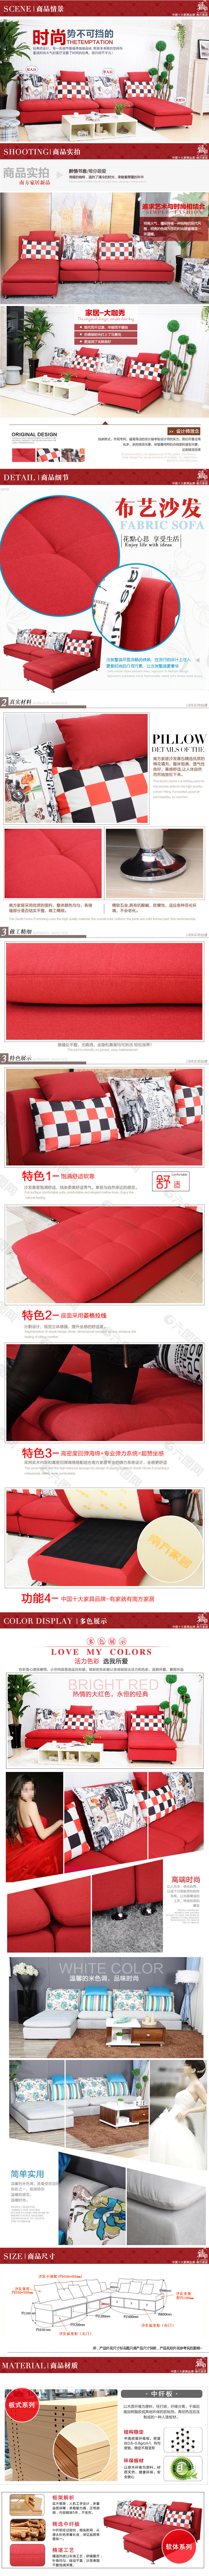 布艺沙发淘宝详情页设计时尚多功能简约红色